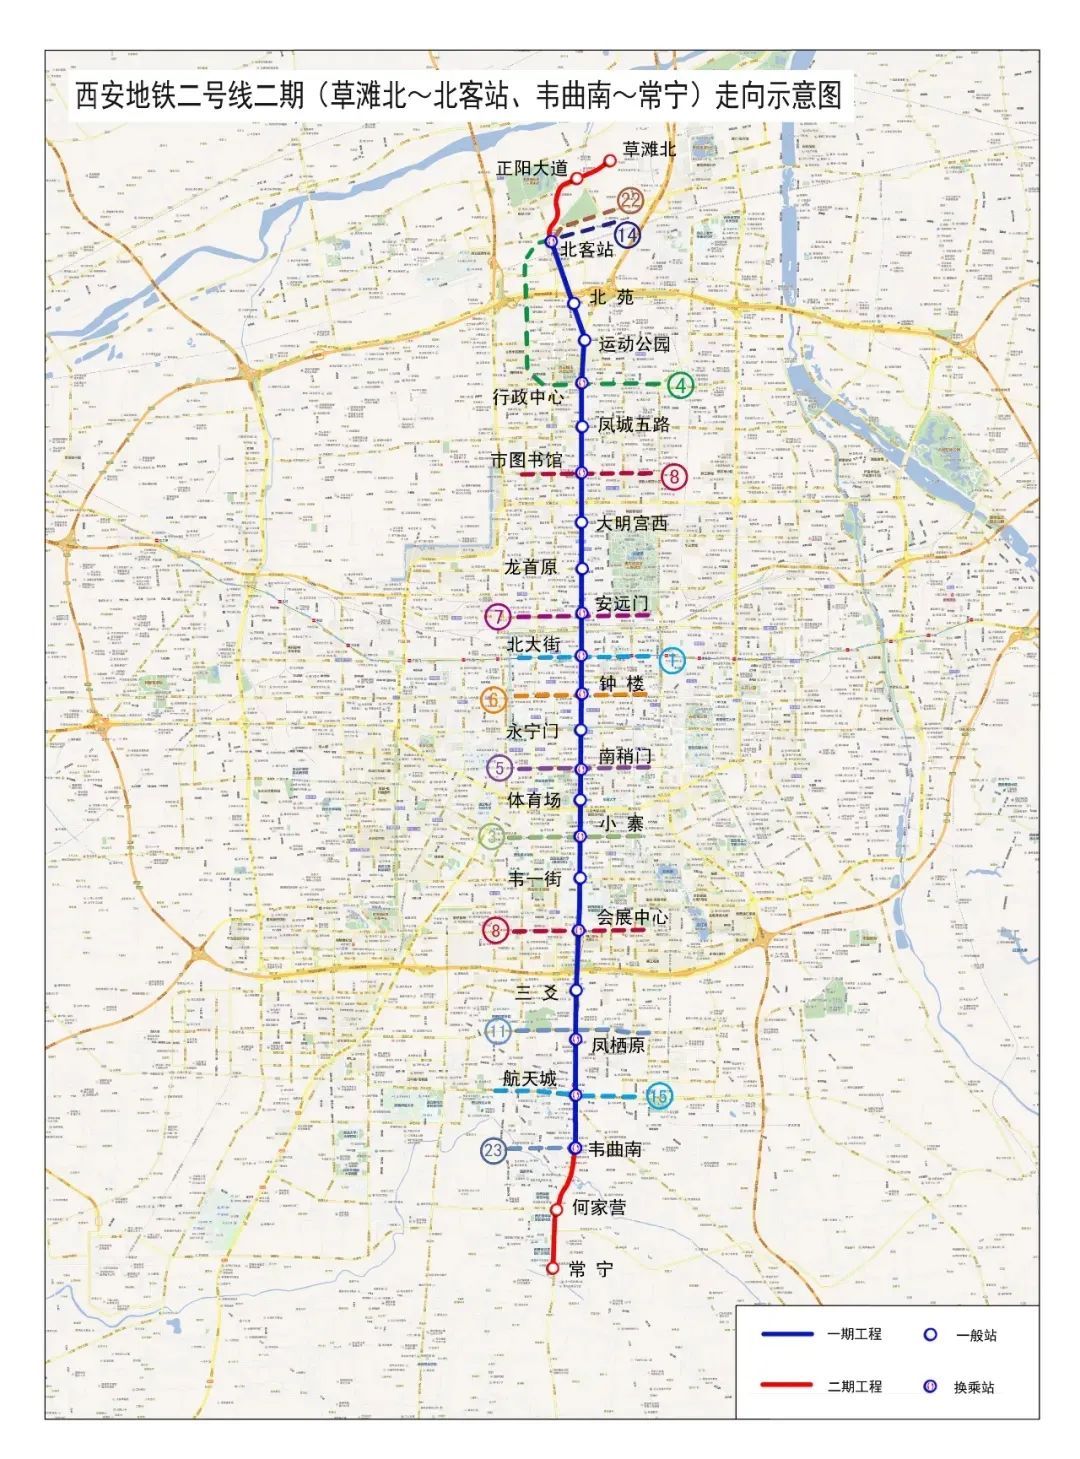 西安地铁8号线、2号线、1号线、4号线最新进展